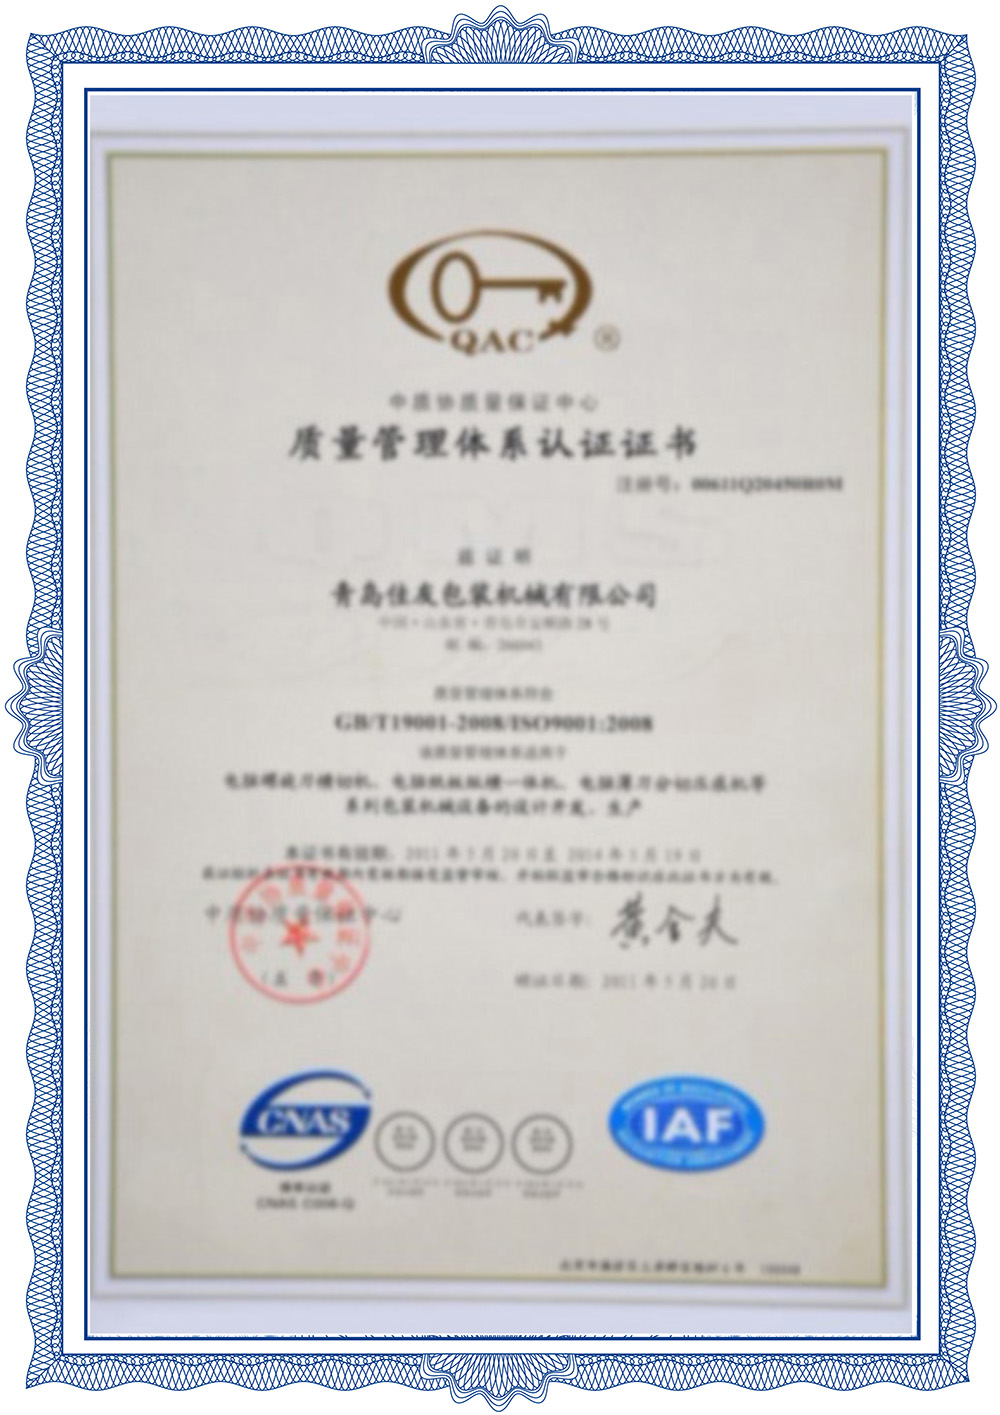 Certificação do sistema de gestão da qualidade